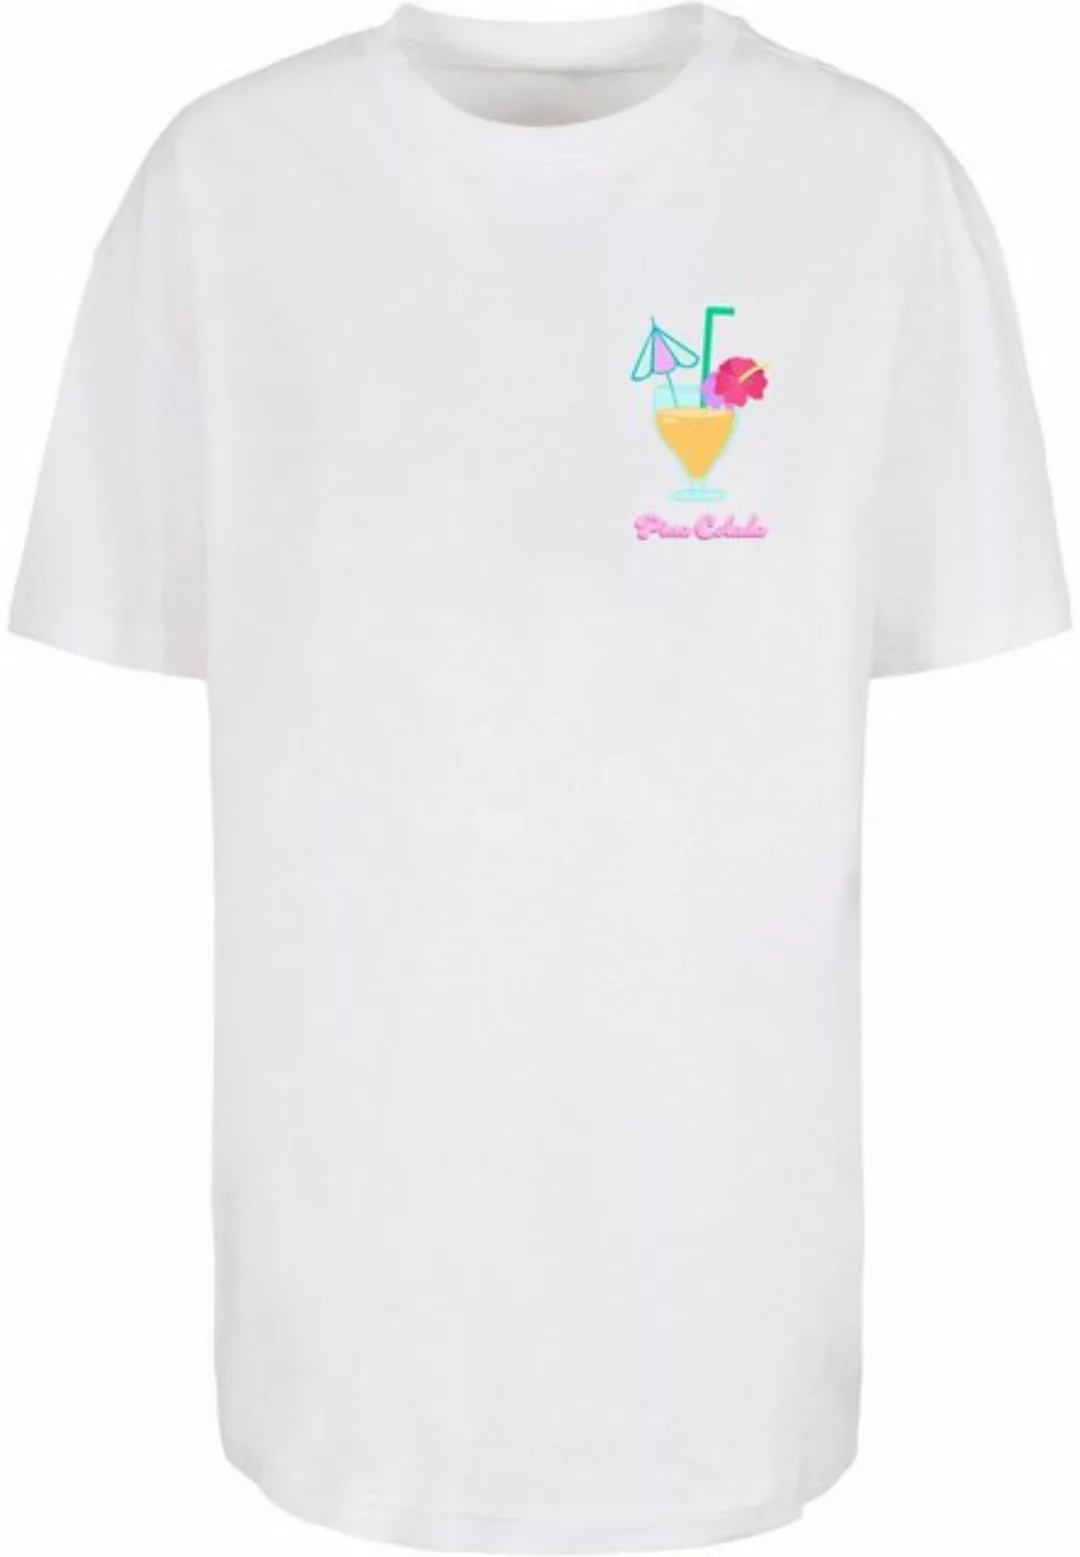 Merchcode T-Shirt Merchcode Damen Ladies Pina ColadaOversized Boyfriend Tee günstig online kaufen